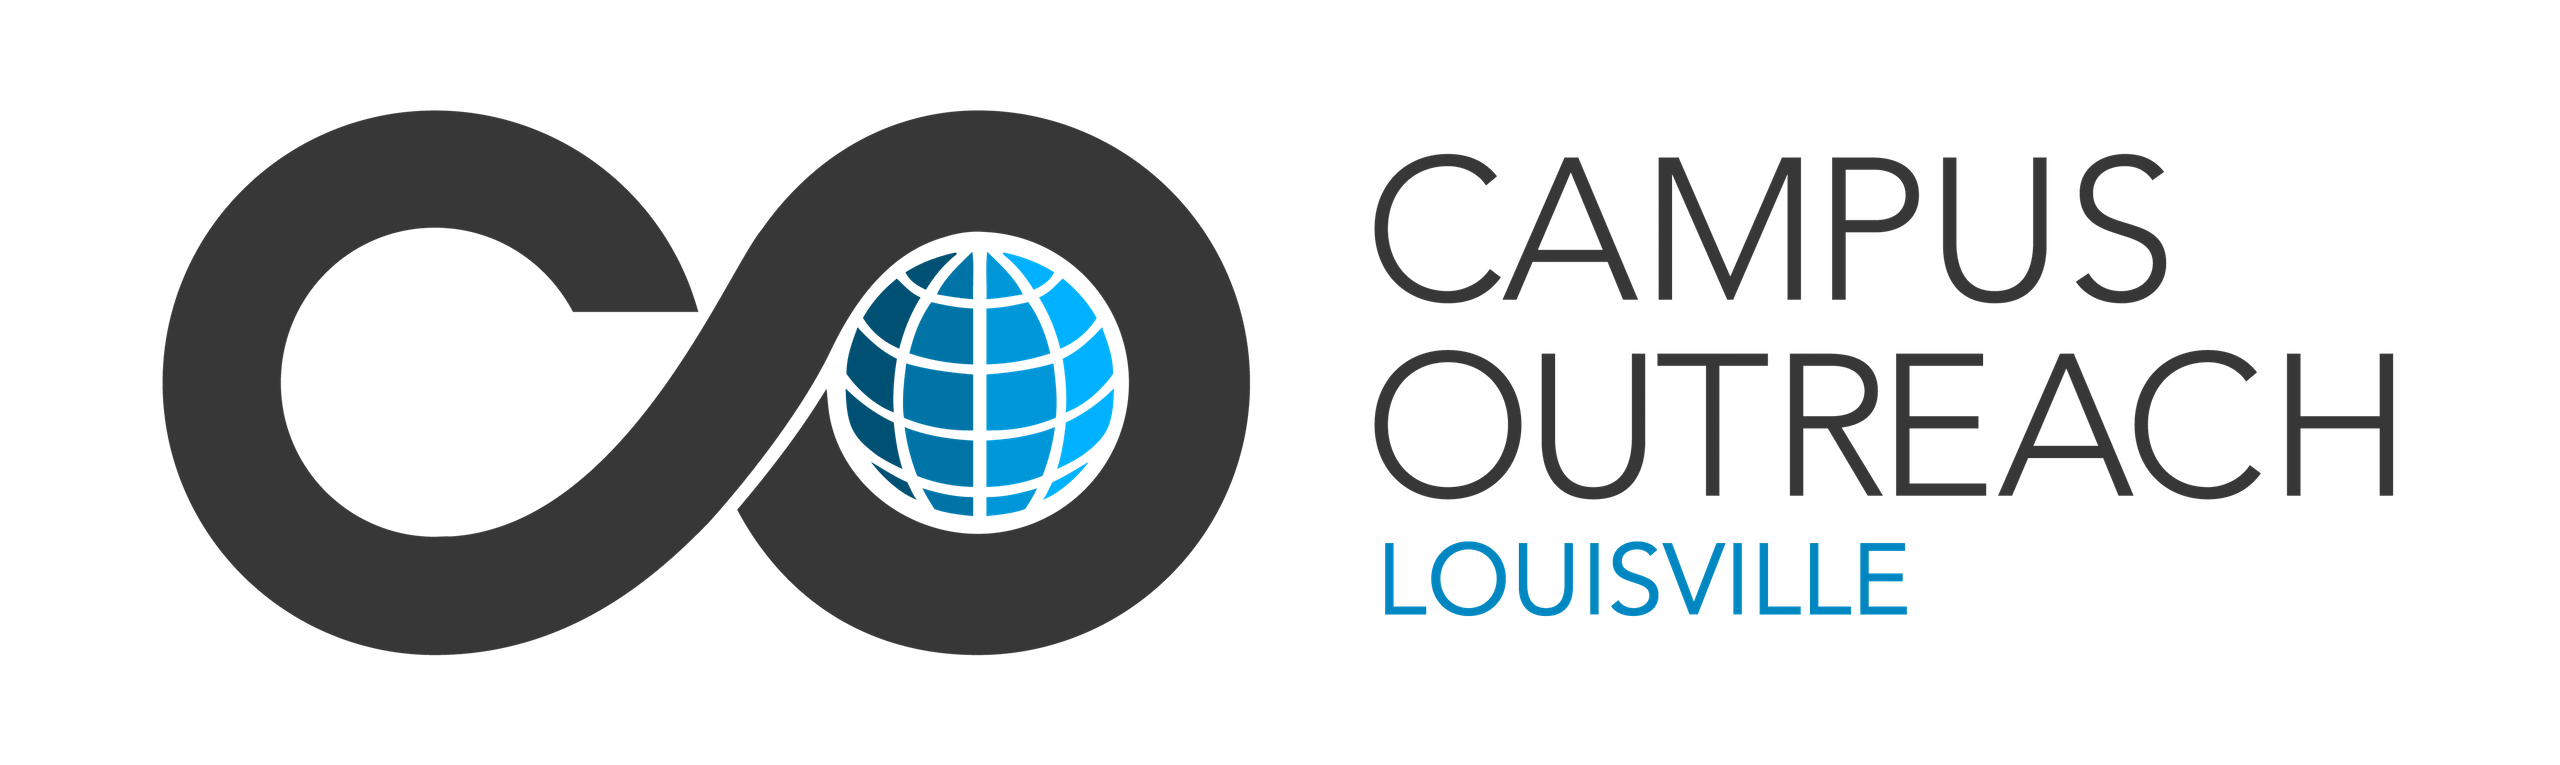 Outreach Logo - CO Louisville Logo - Campus Outreach